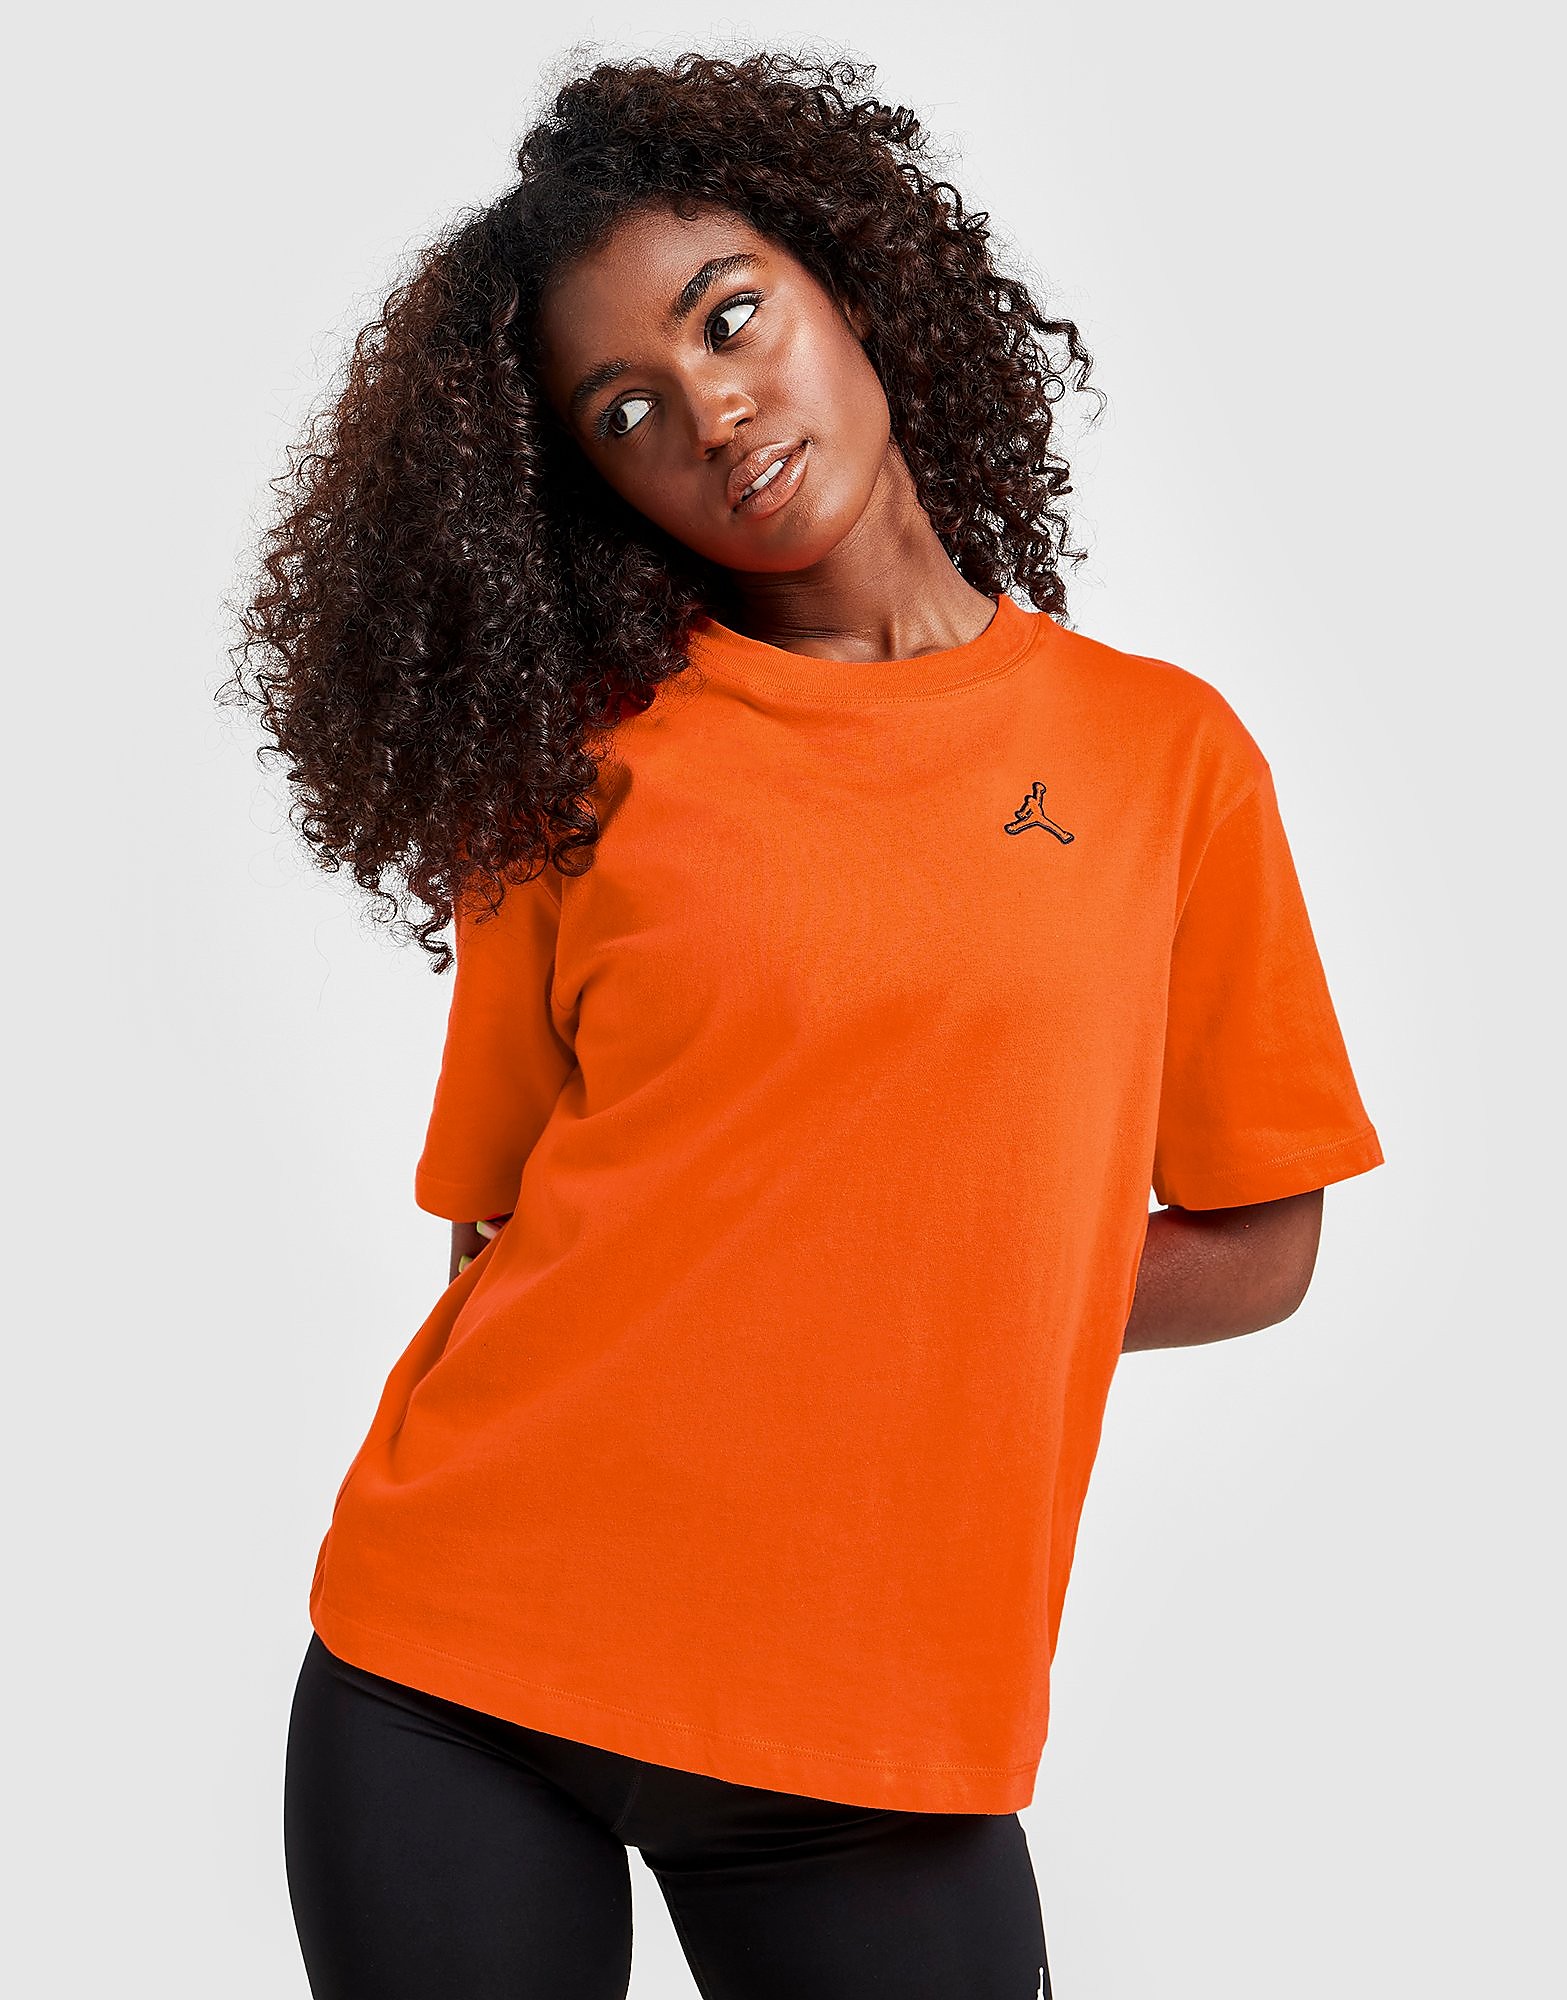 Jordan T-Shirt Essential - Or-de-laranja - Womens, Or-de-laranja